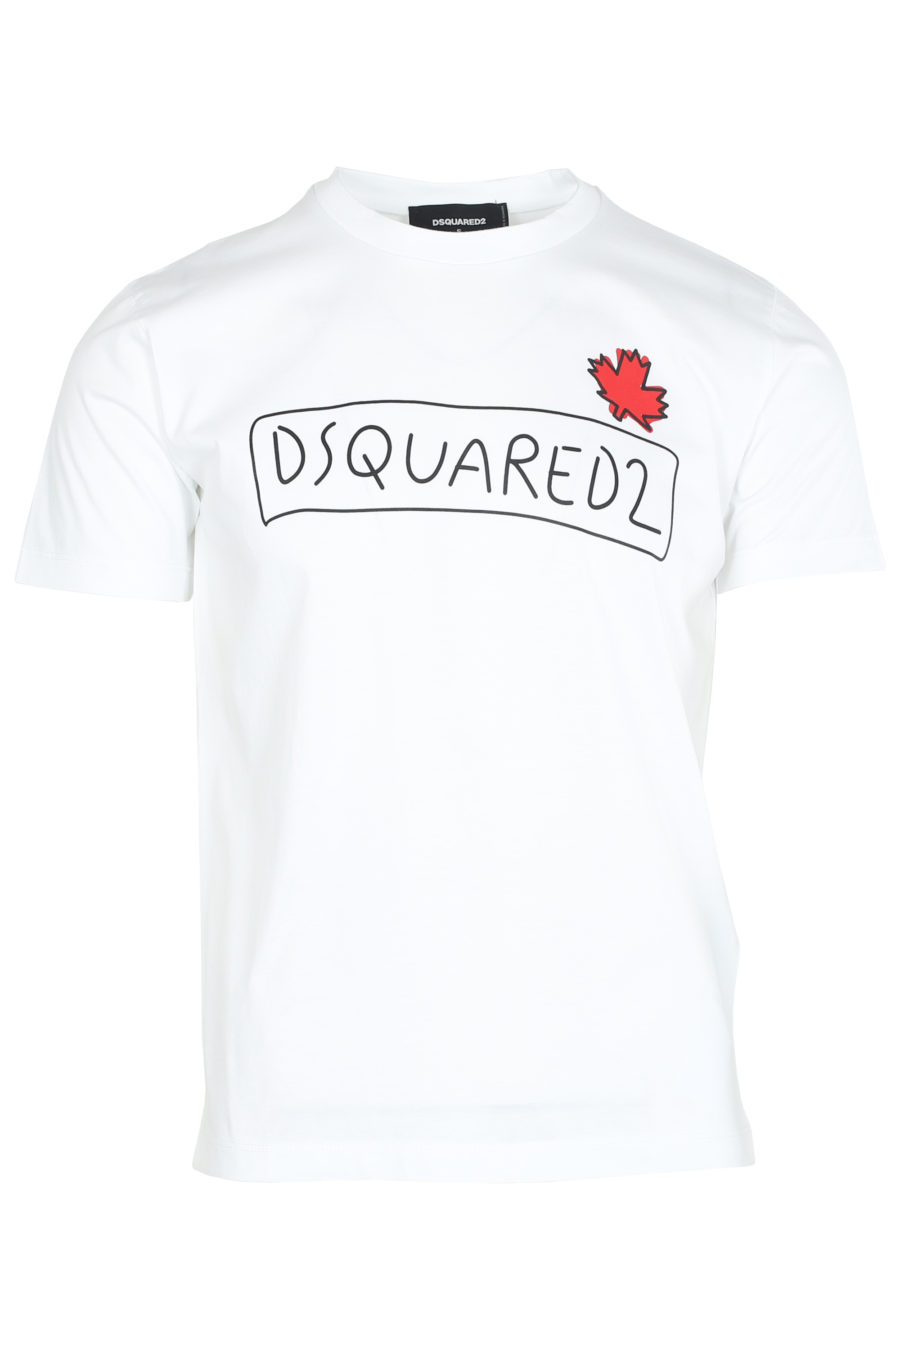 T-shirt branca com logótipo desenhado - IMG 6208